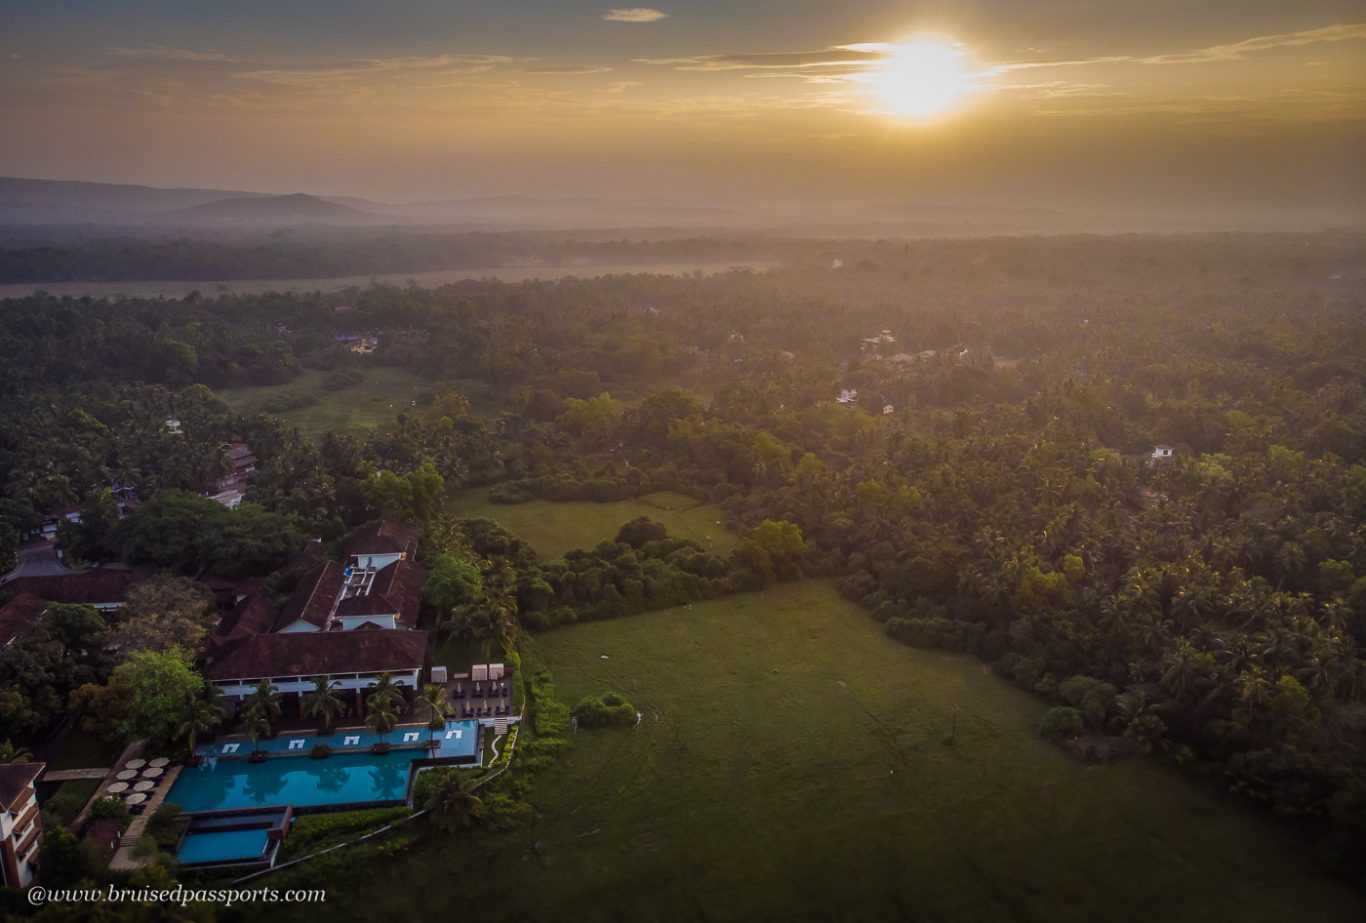 Alila diwa goa marjoda aerial drone view with paddy fields